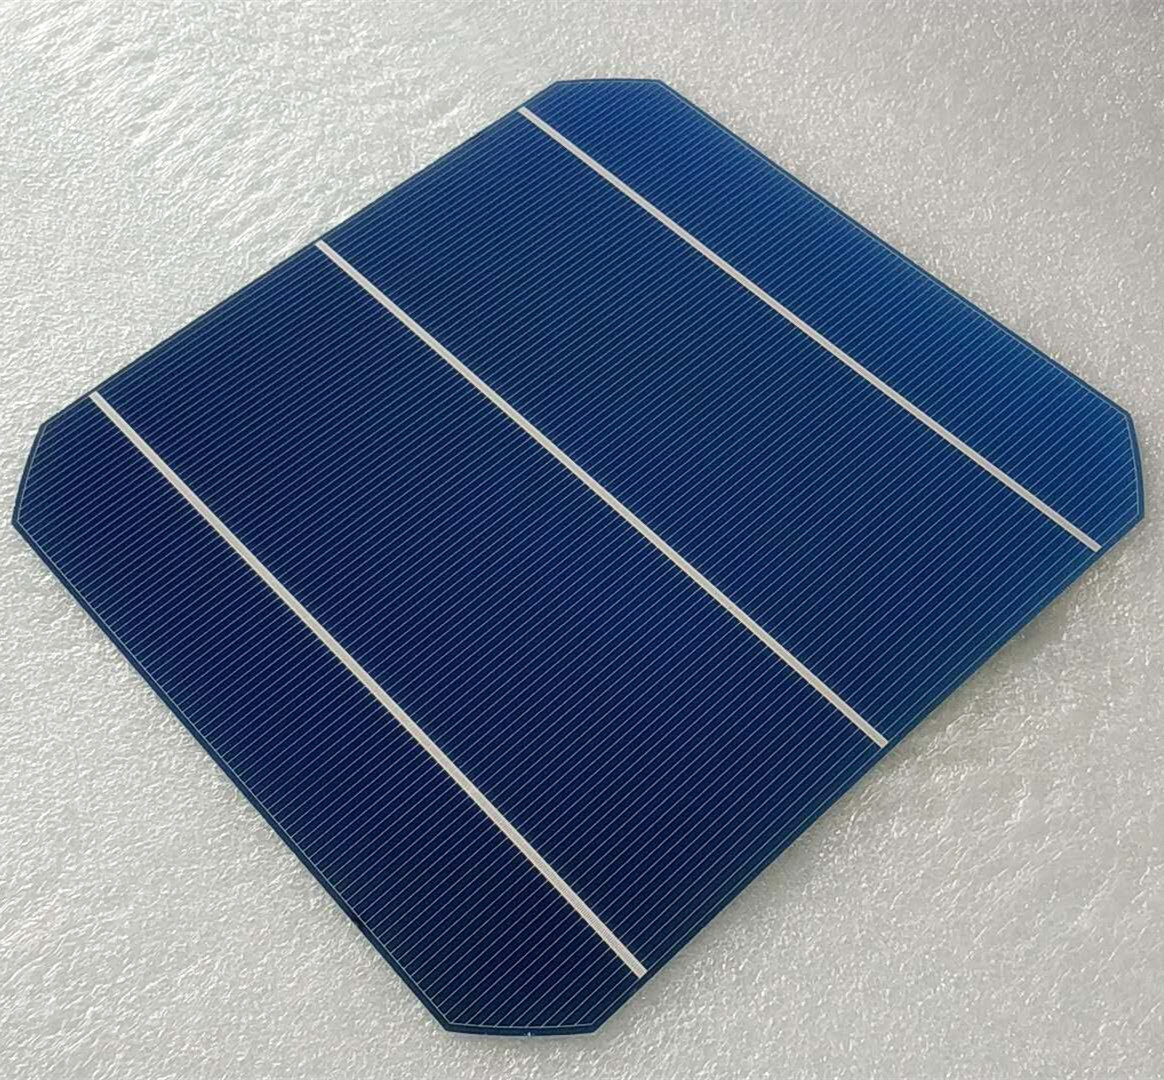 太陽能電池片